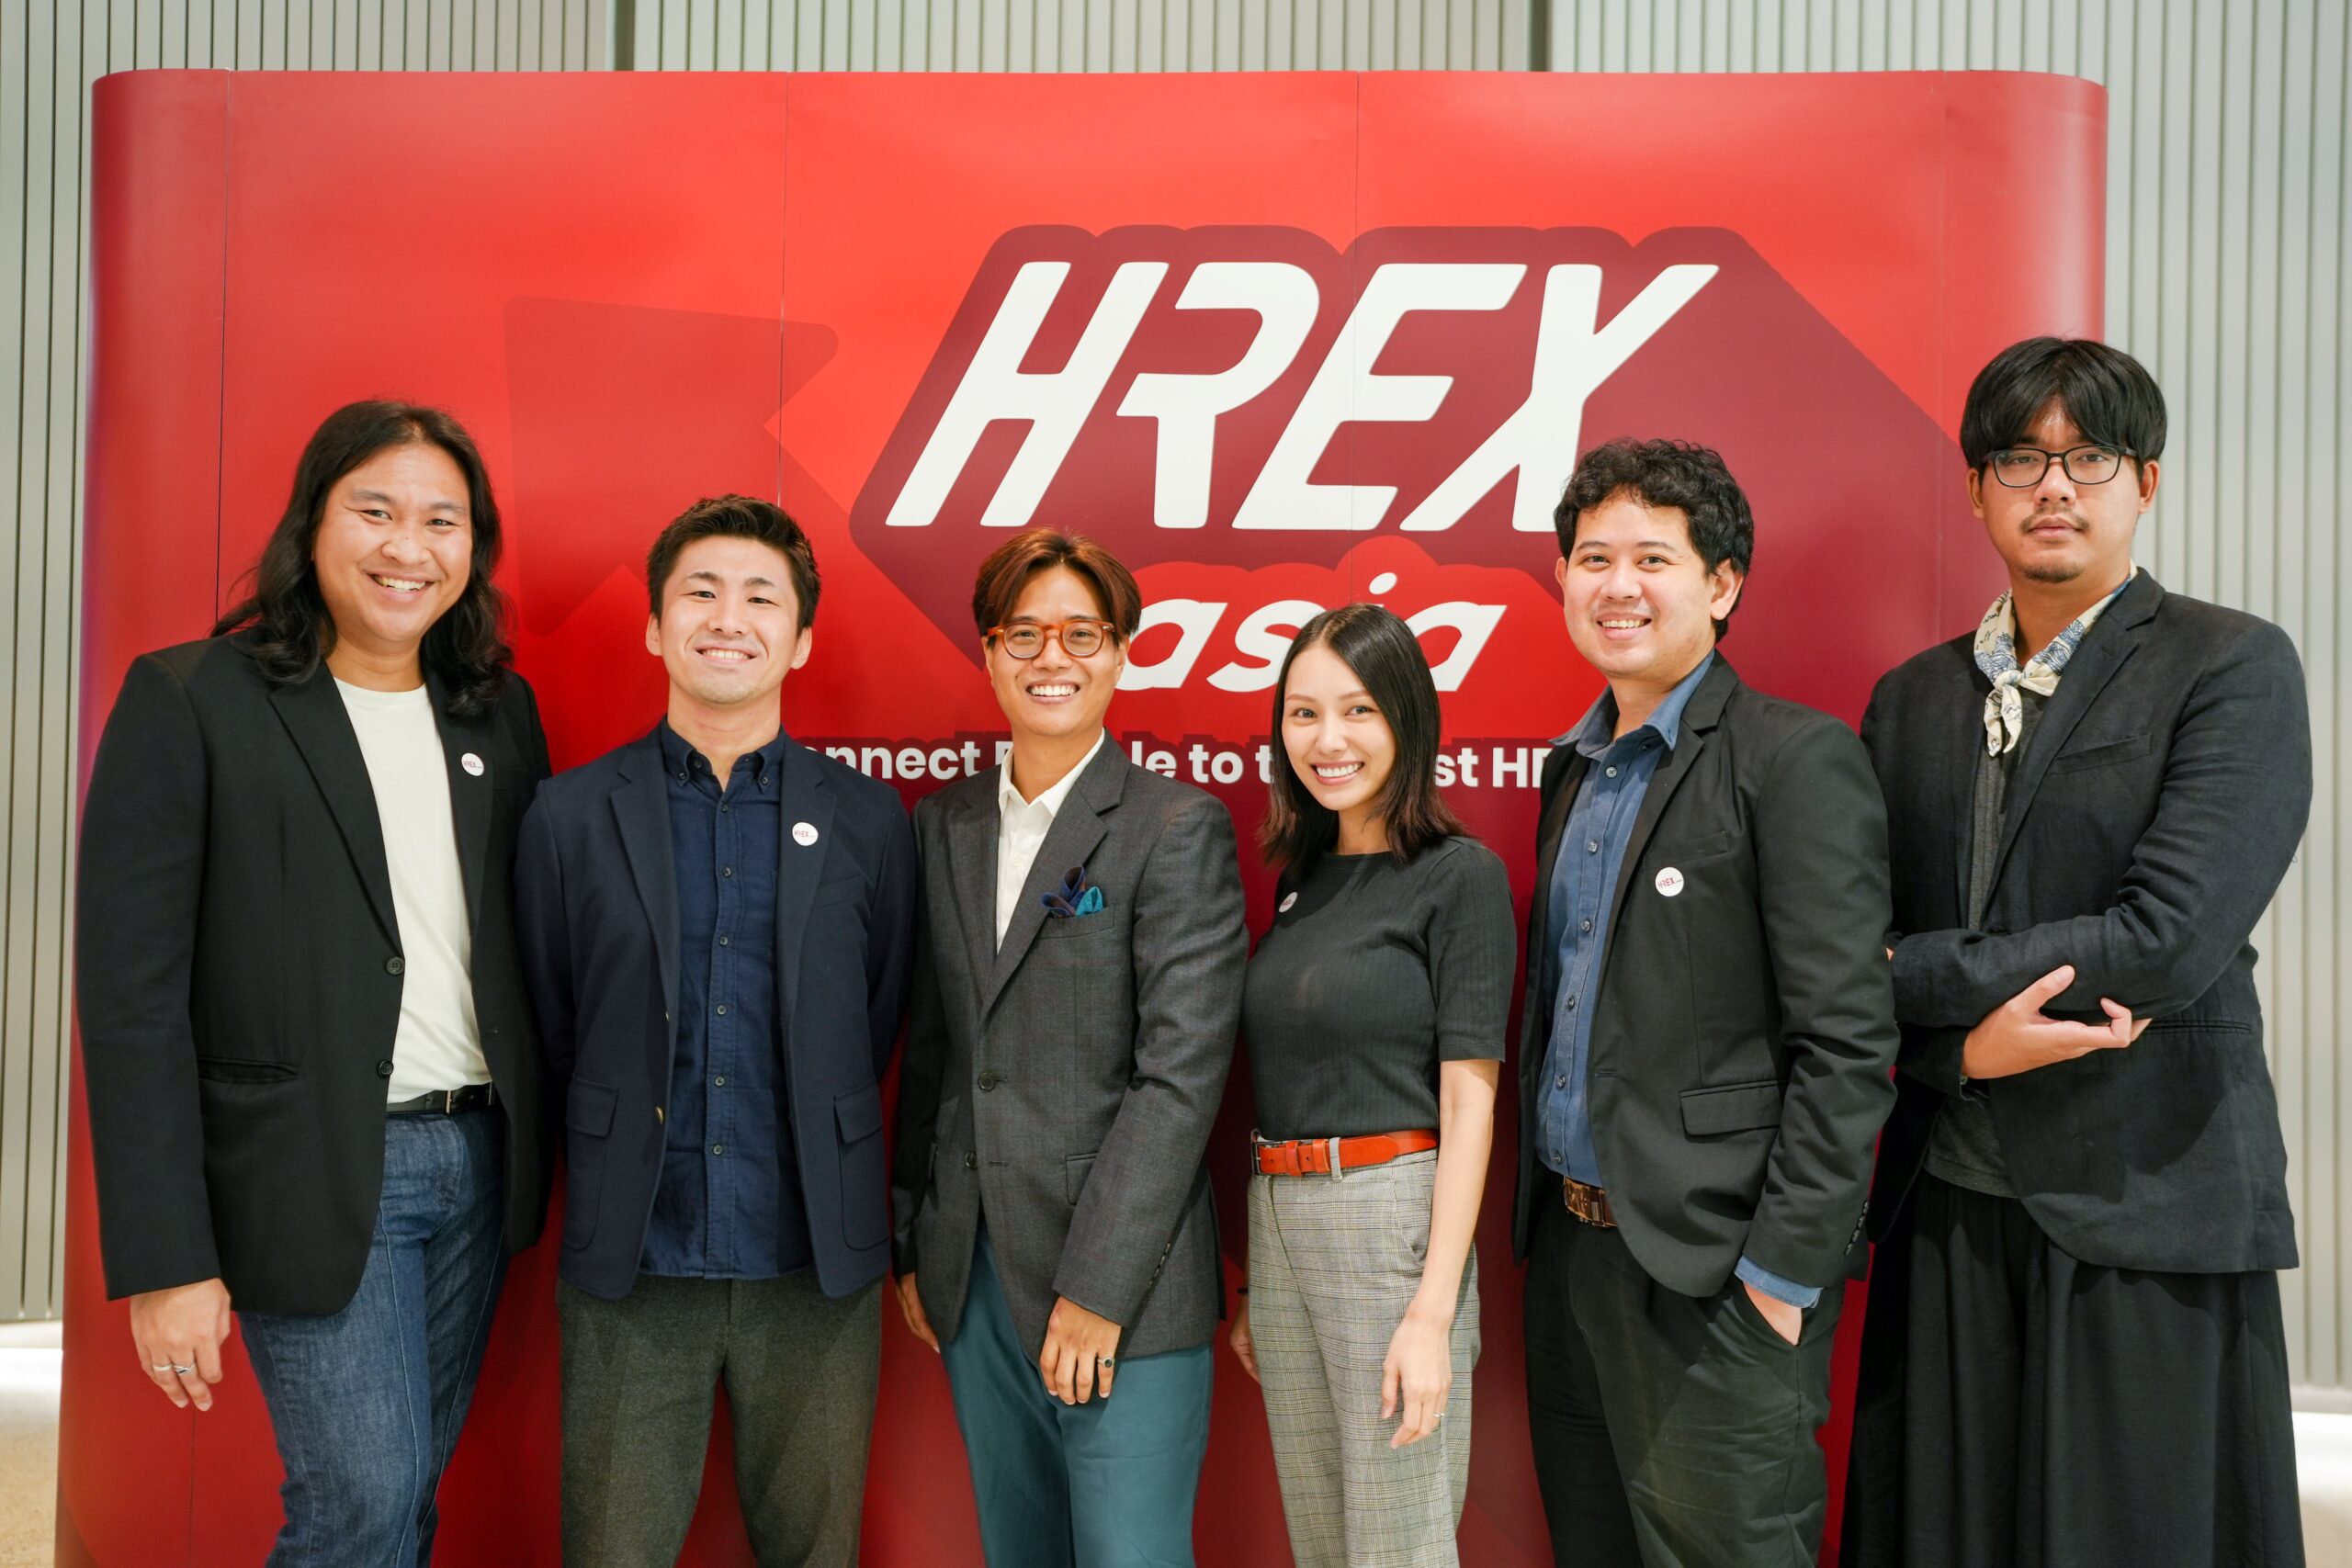 HREX.asia จัดงาน “What’s the EX?” ชูวิสัยทัศน์ยกระดับแวดวง HR รอบด้าน สร้างสังคมการทำงานที่ยั่งยืนครบวงจร 